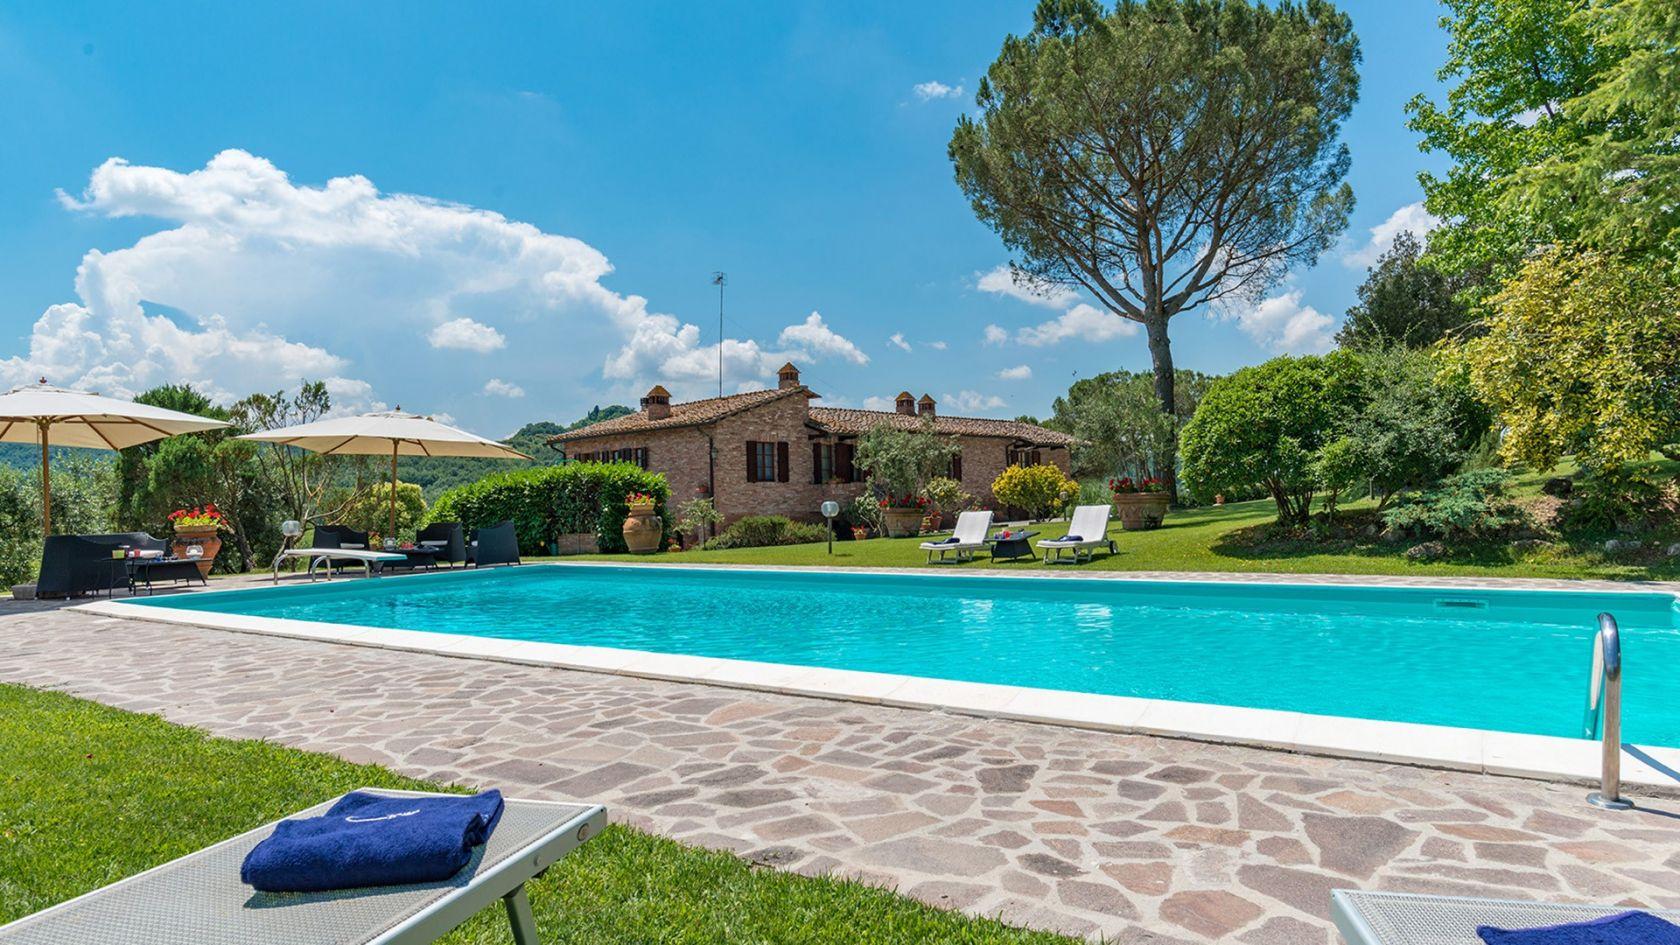 Toscana Immobiliare - Incantevole podere con piscina in vendita ad Asciano